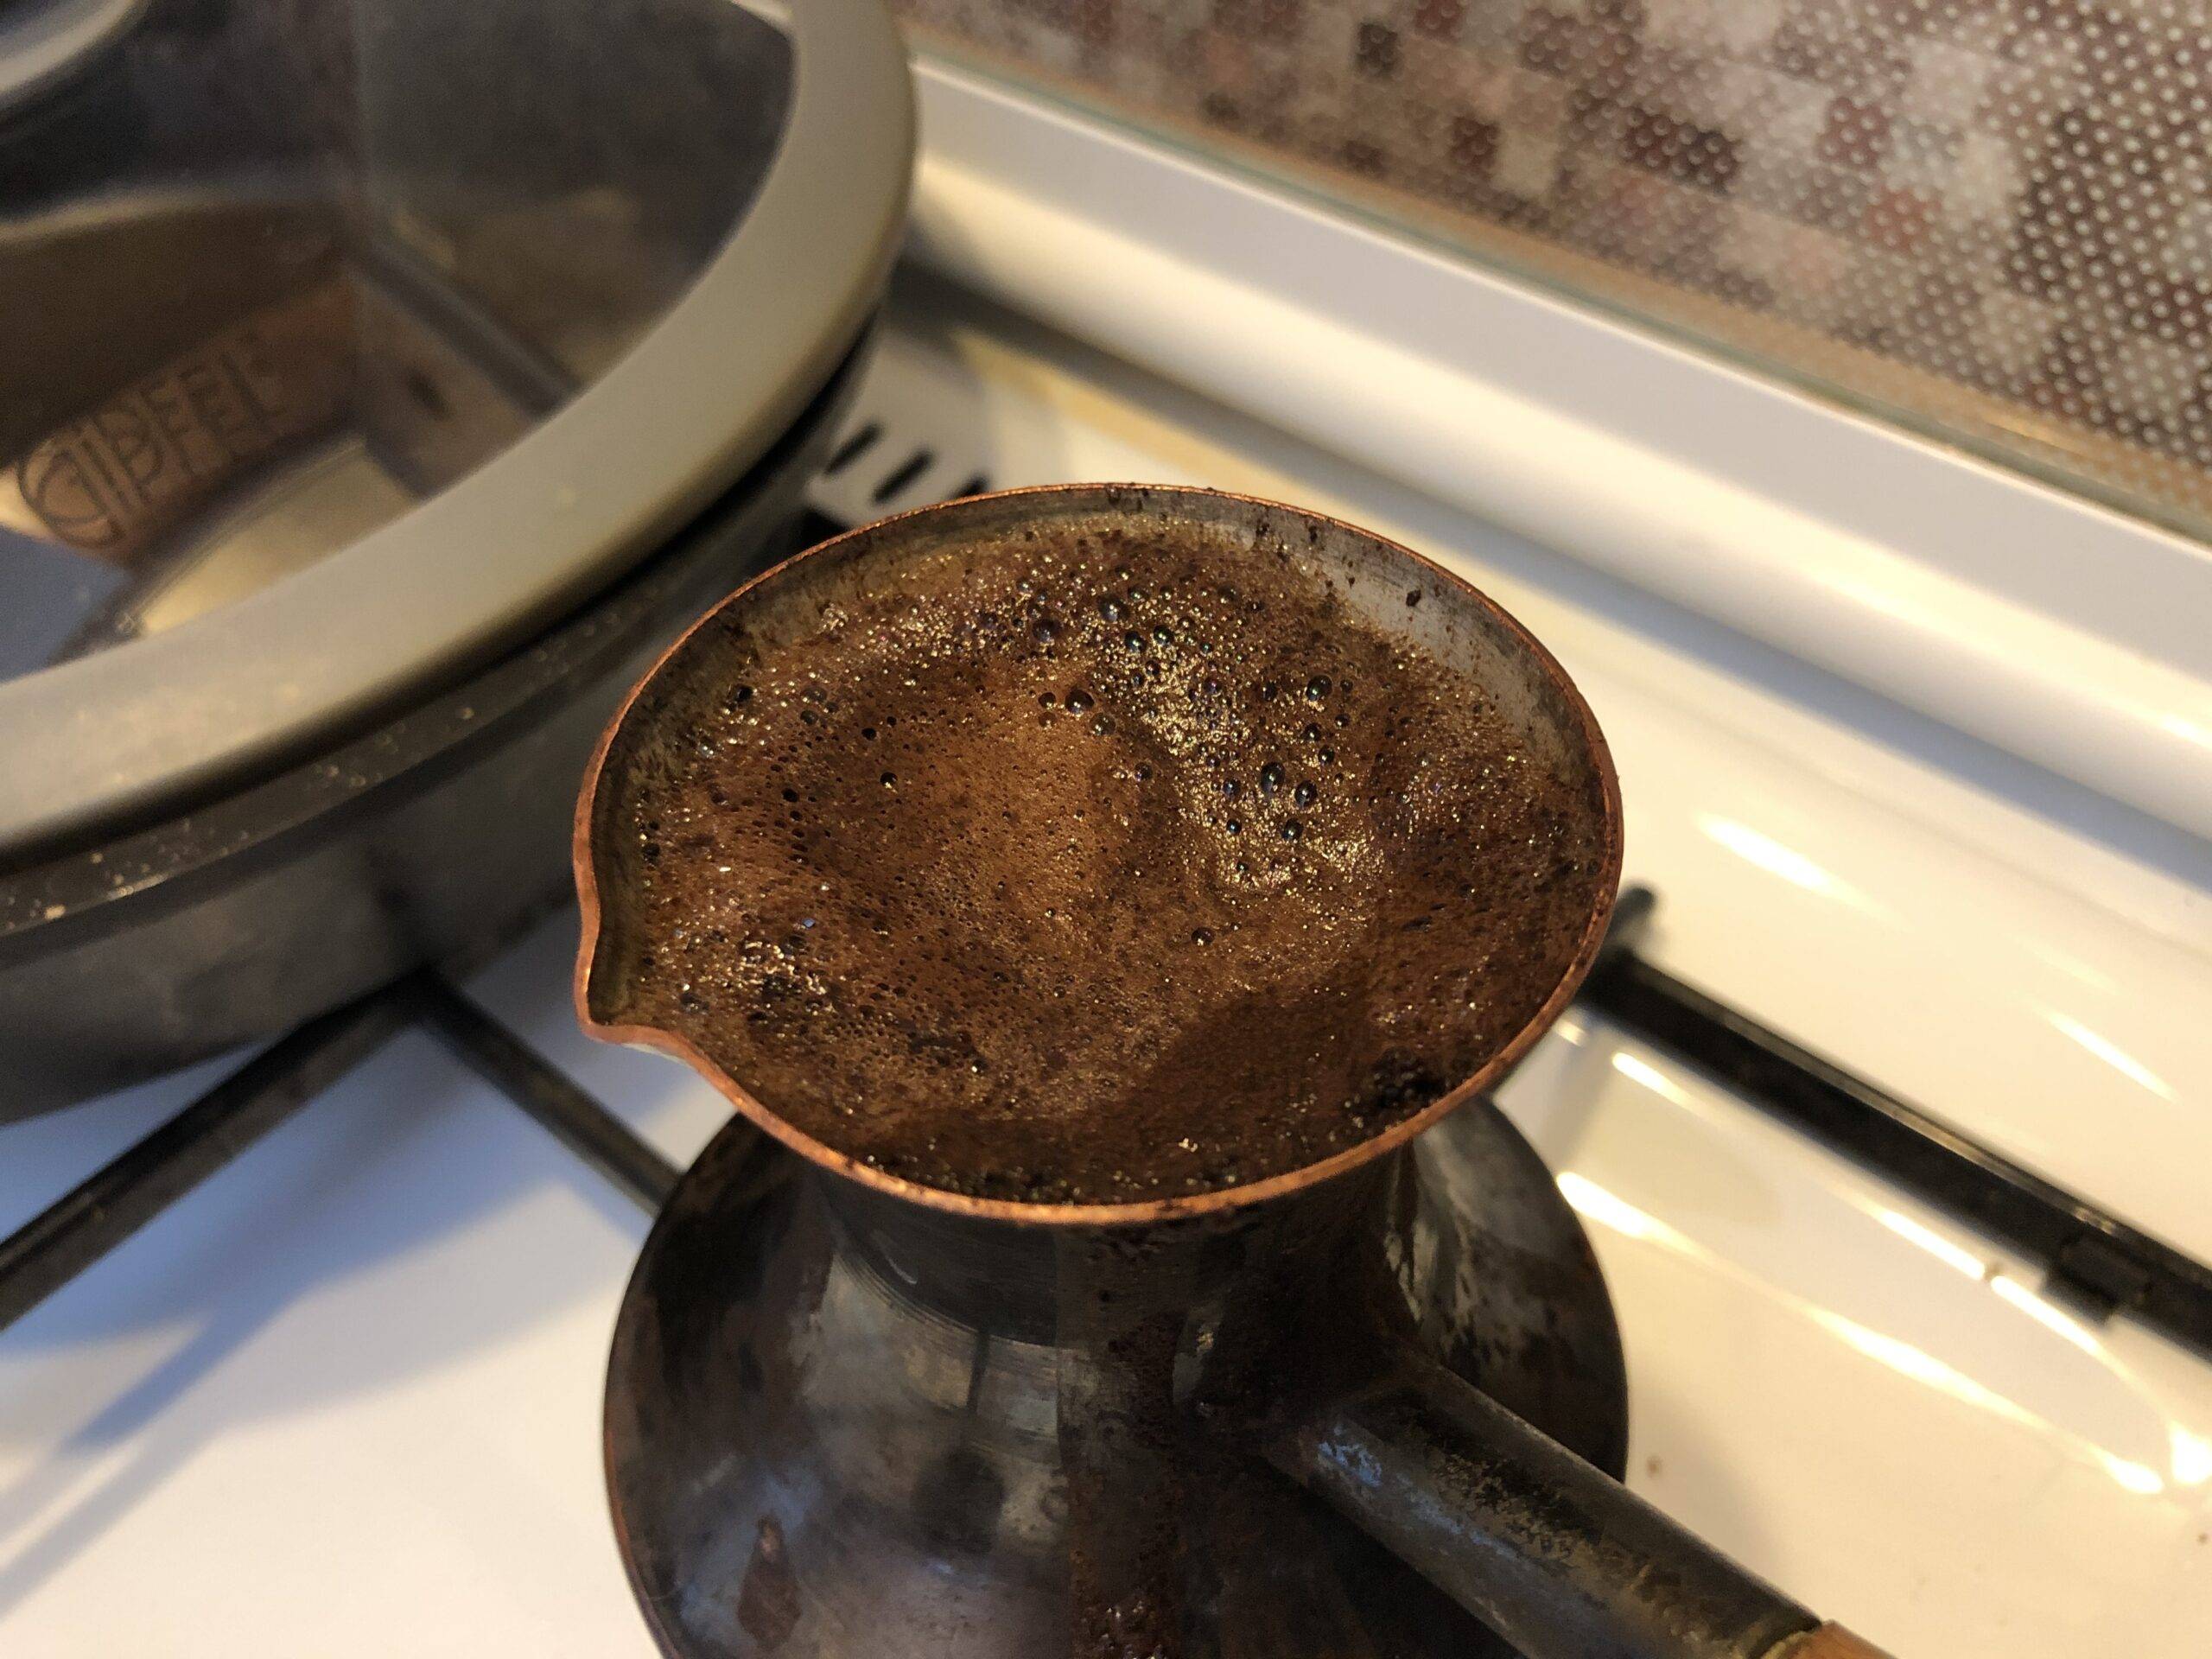 Как заварить в чашке молотый кофе